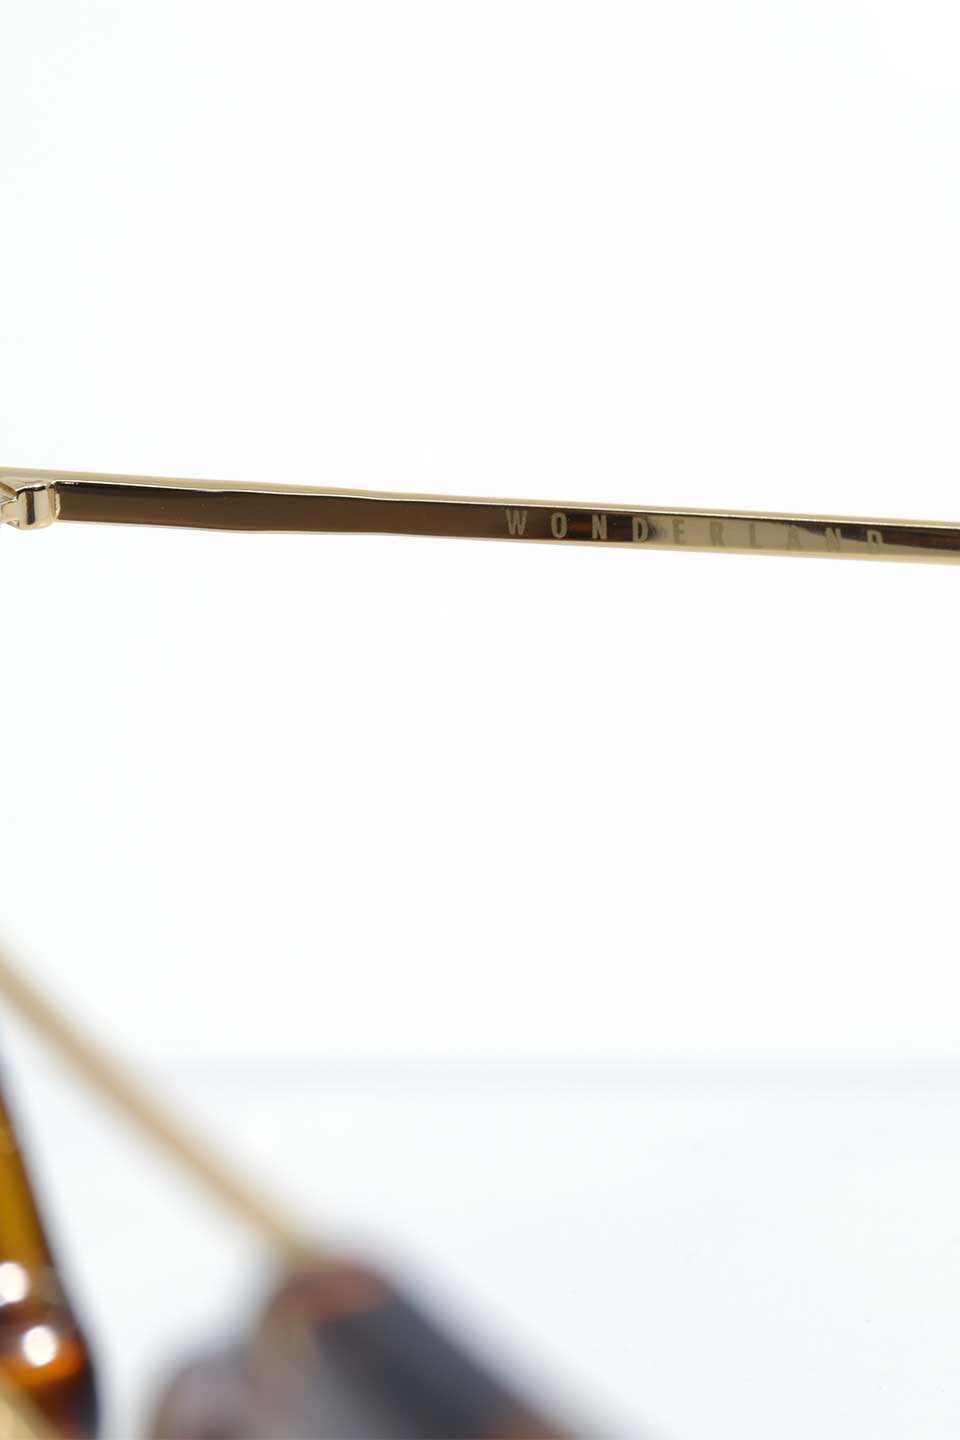 WONDERLANDのSTATELINE(02-Tortoise/BronzeLens)ステイトライン・メタルフレーム・サングラス/WONDERLANDのメガネ・サングラスや。WONDERLANDのコレクションの中で、アメリカ、日本共にロングセラーモデルとなっているアイコニックモデル